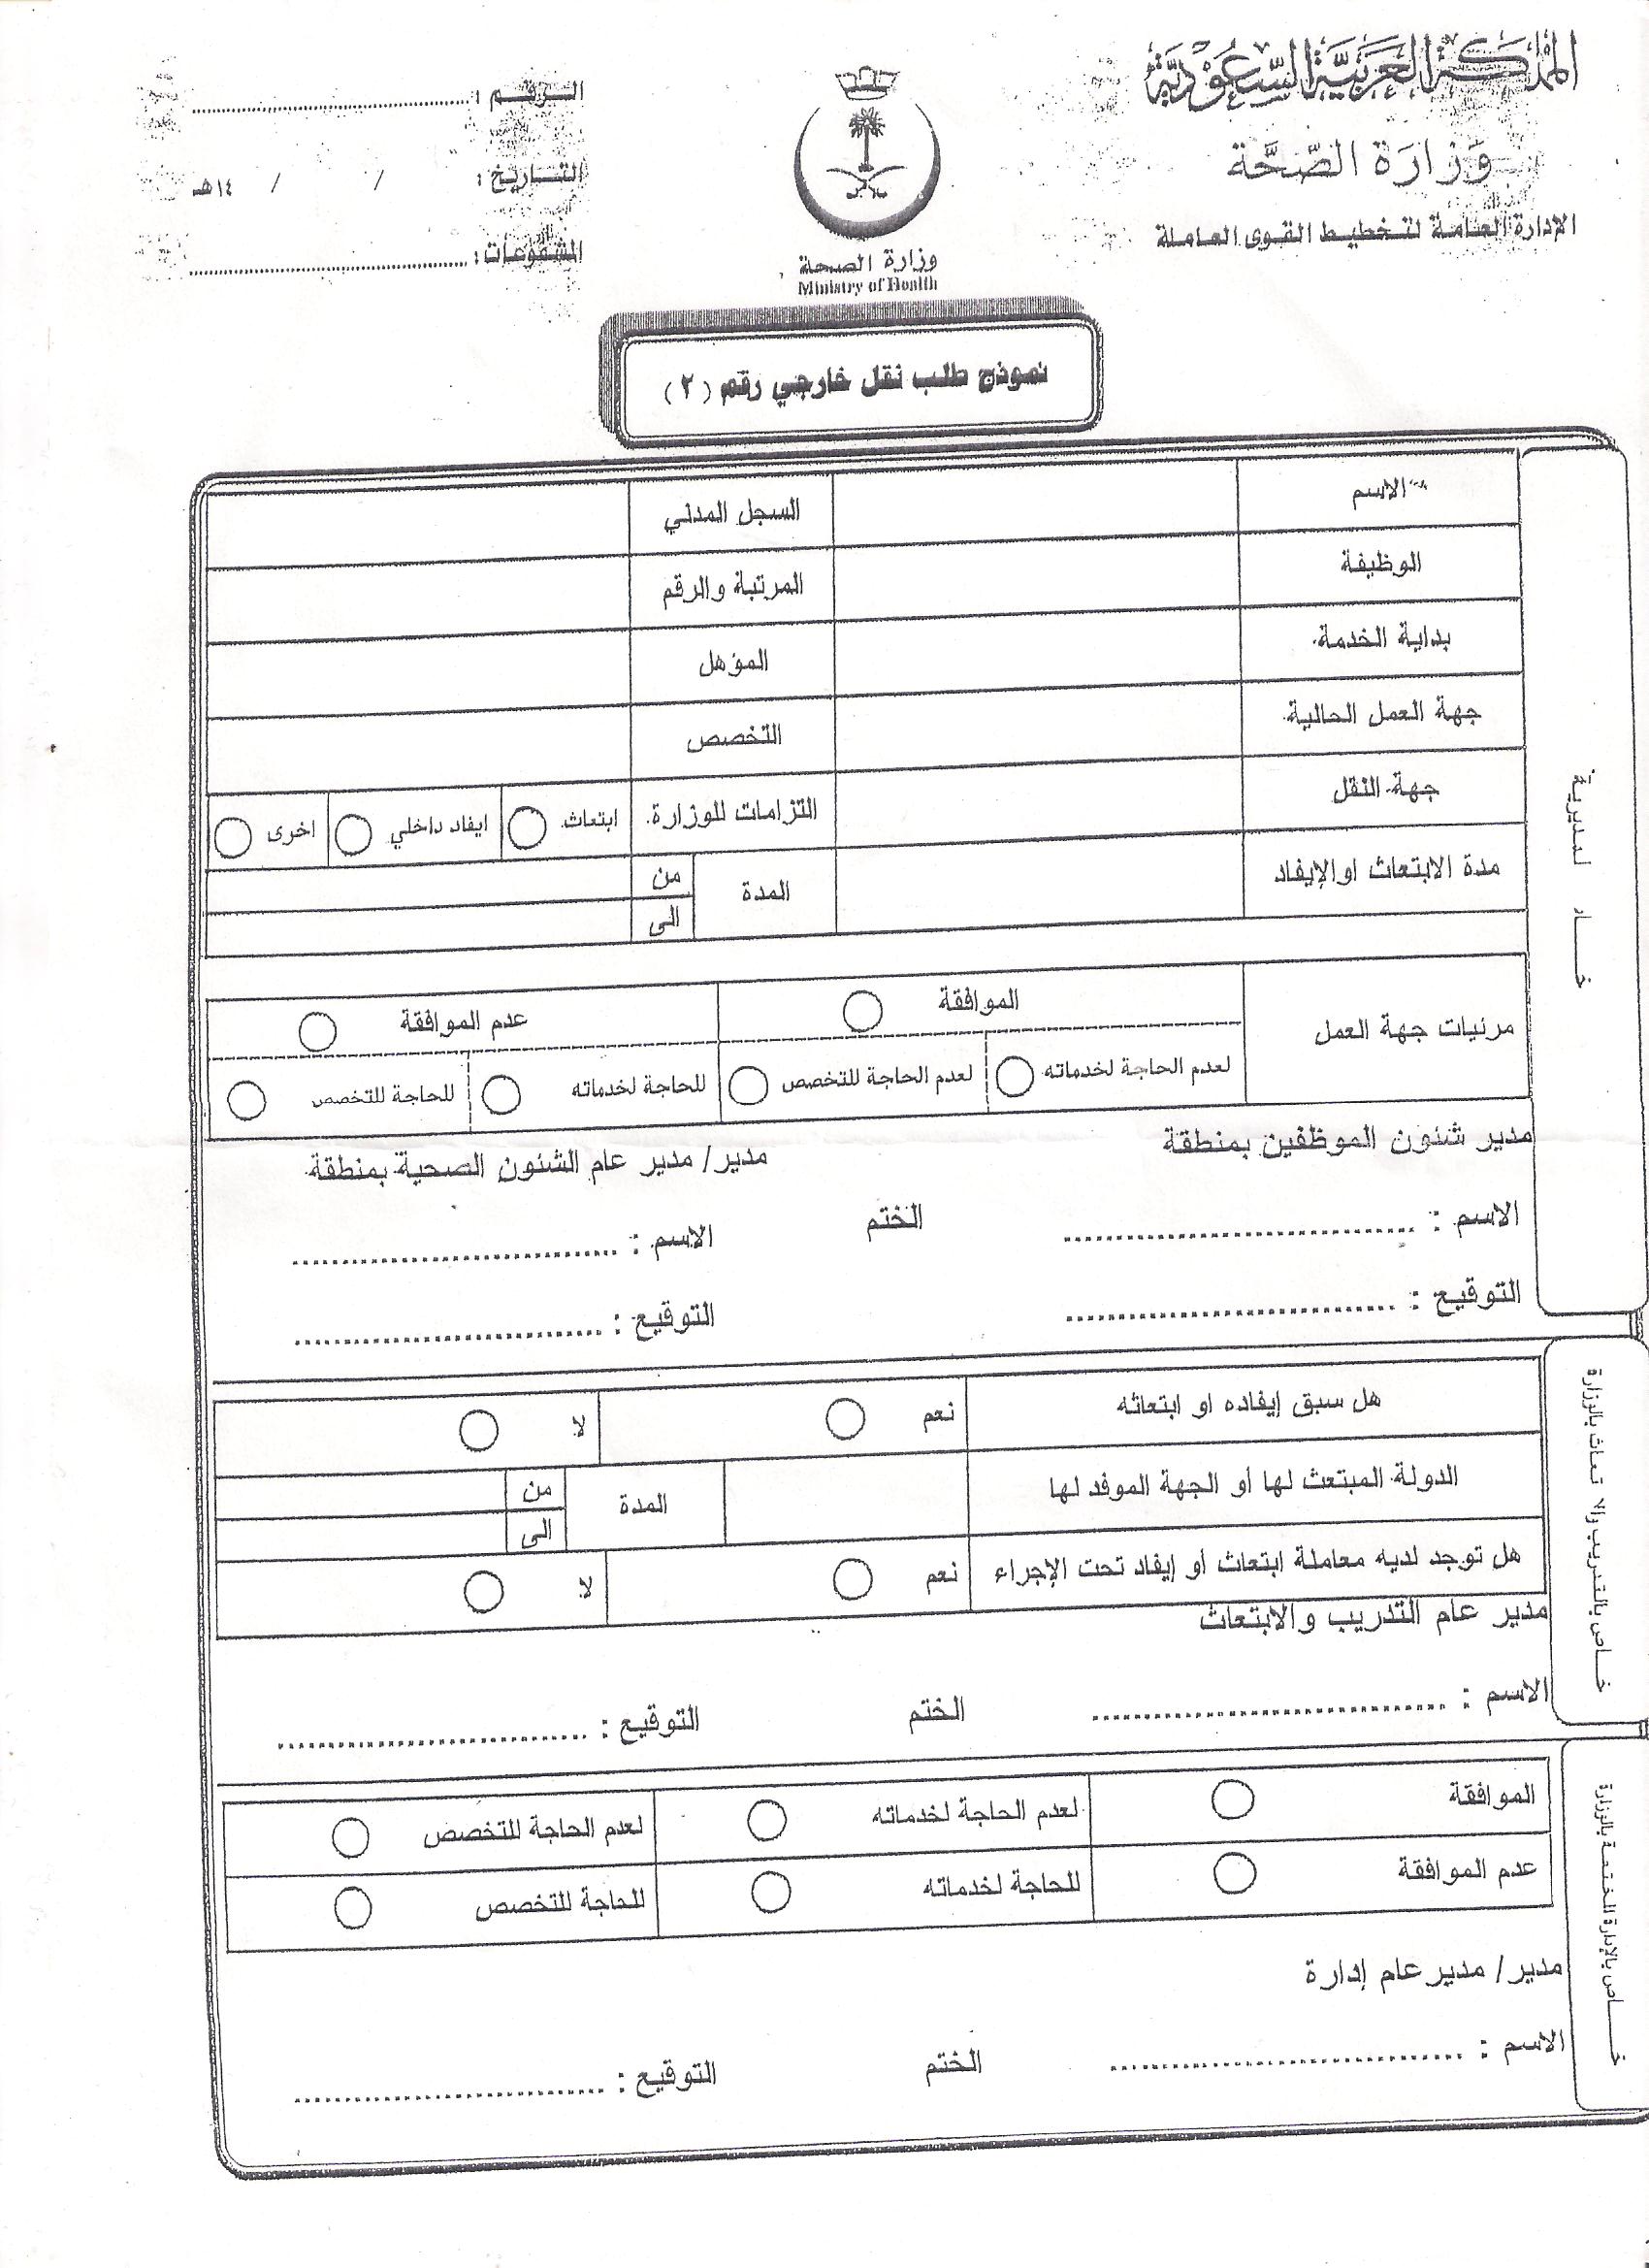 نموذج اجازة مرضية وزارة الصحة السعودية